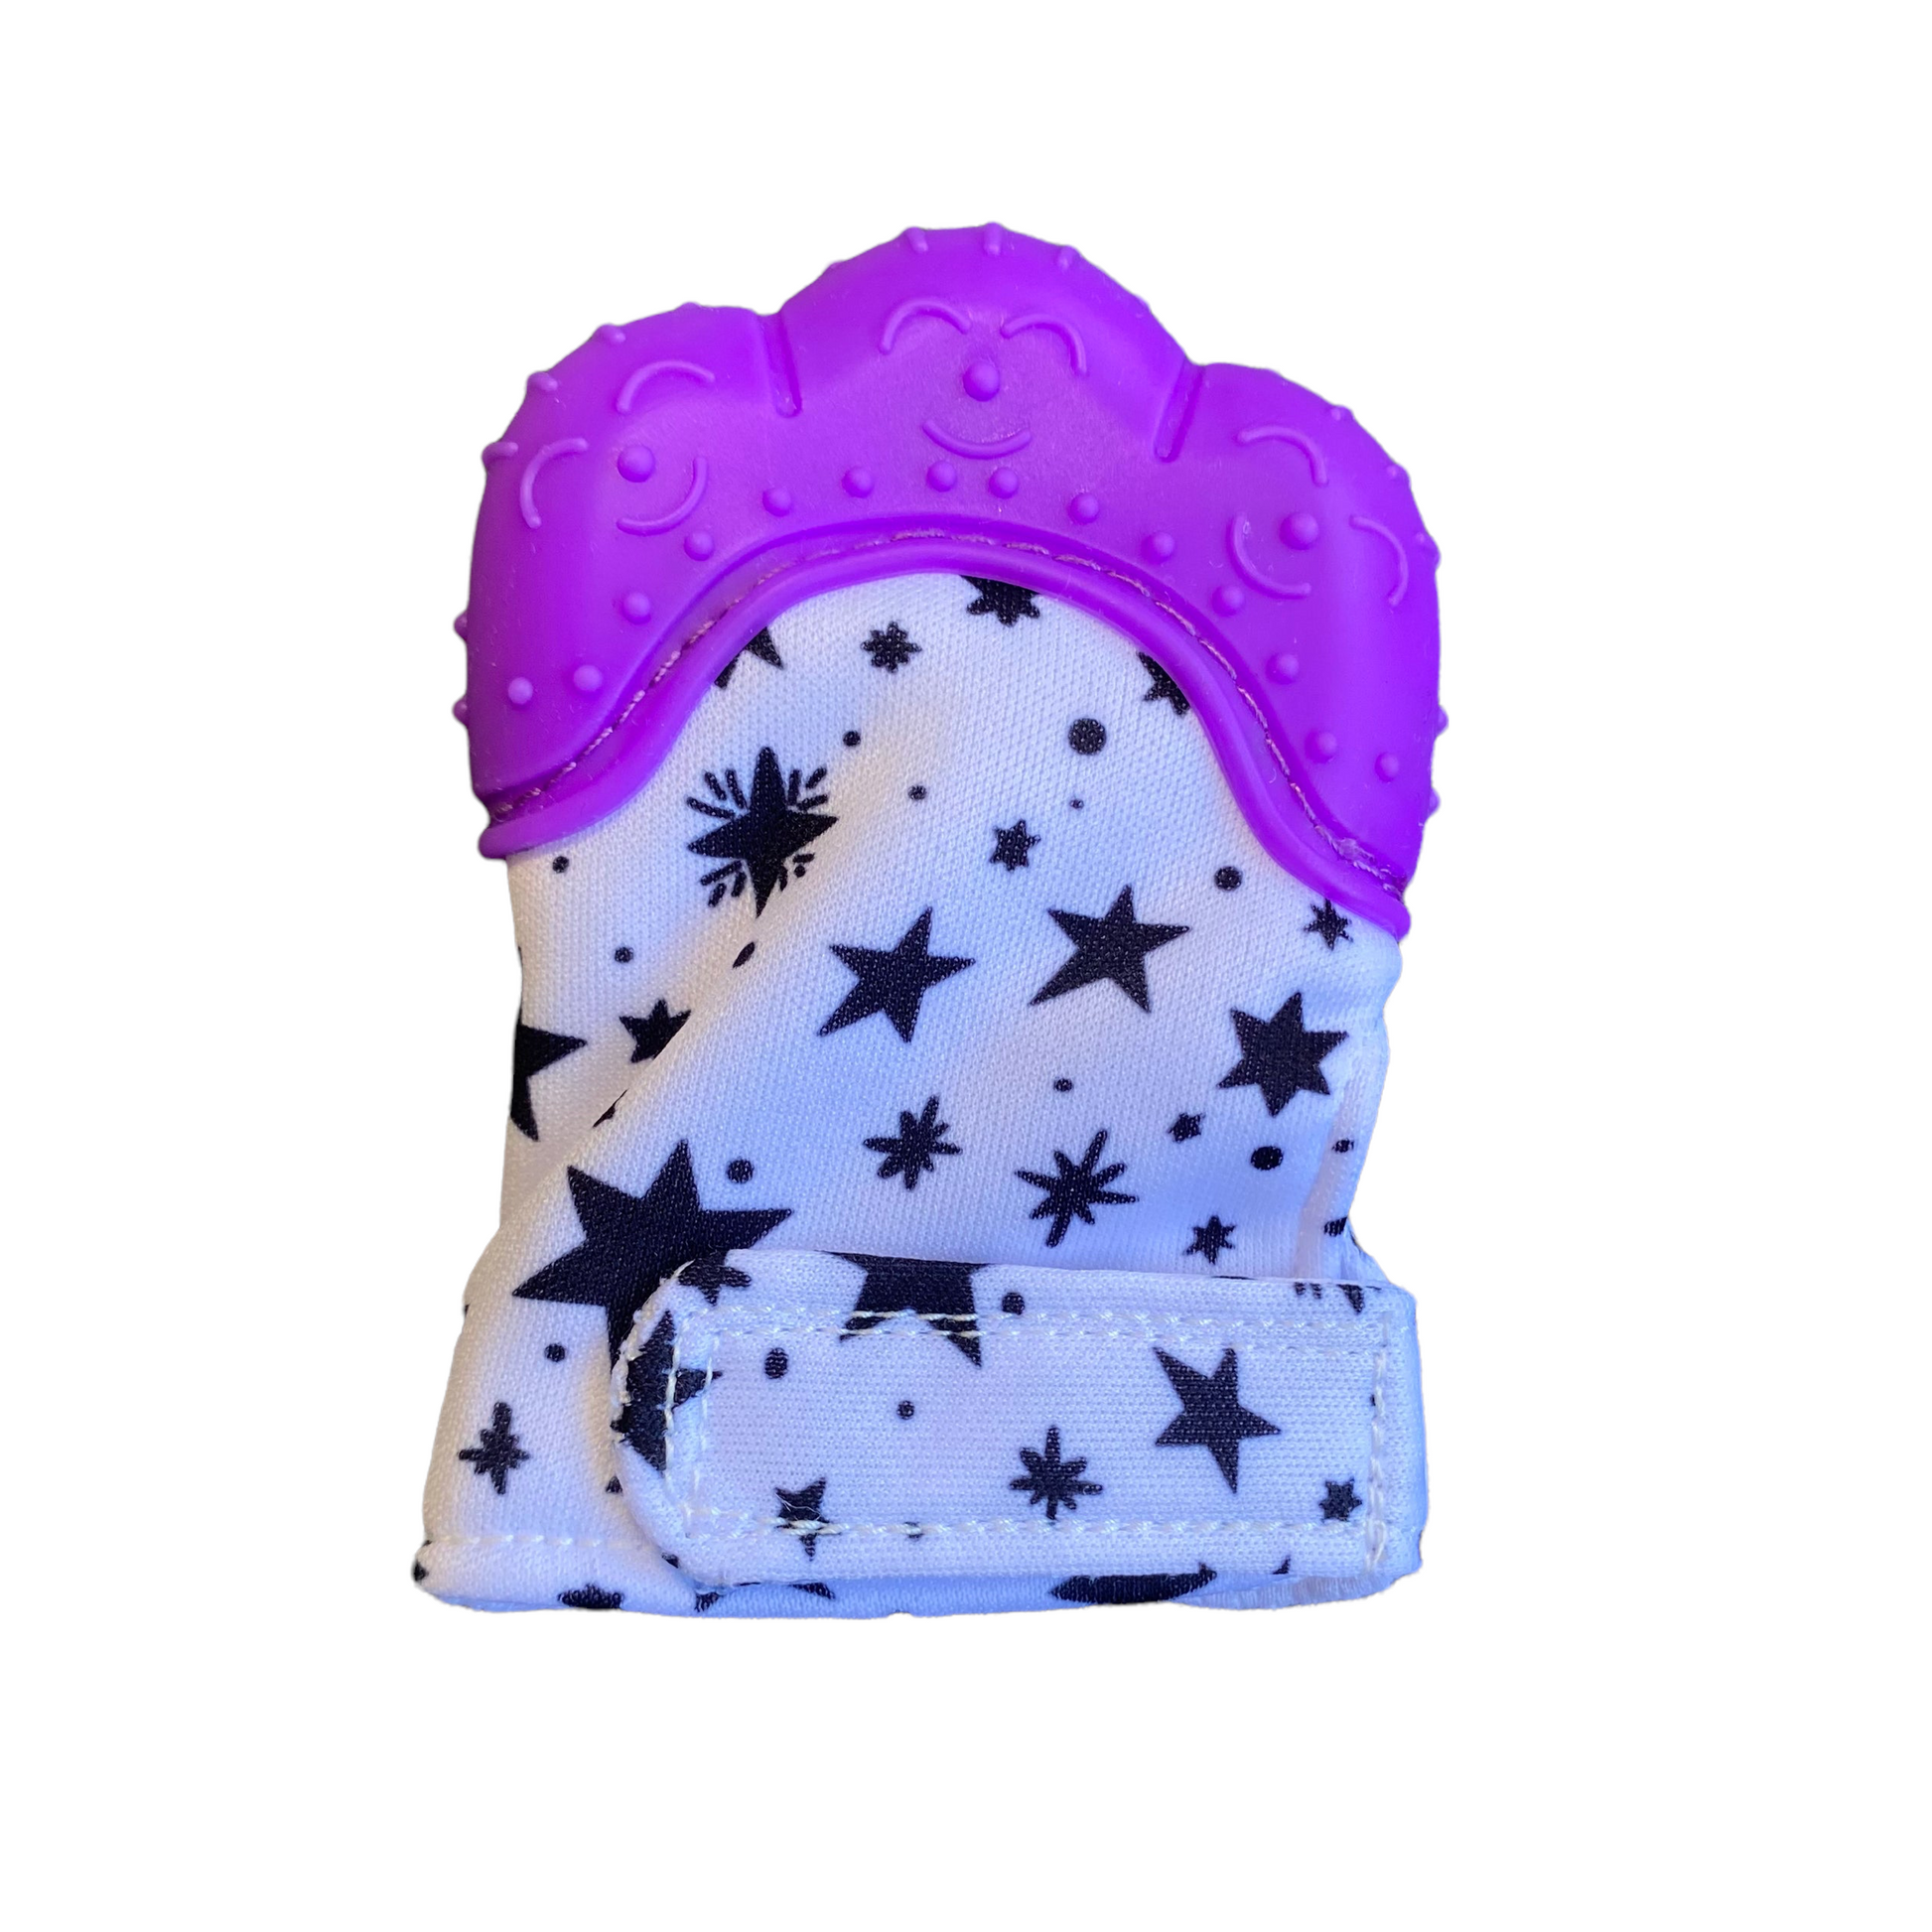 Baby Chew Glove / Teether Mitt  SPIRIT SPARKPLUGS Purple Stars  